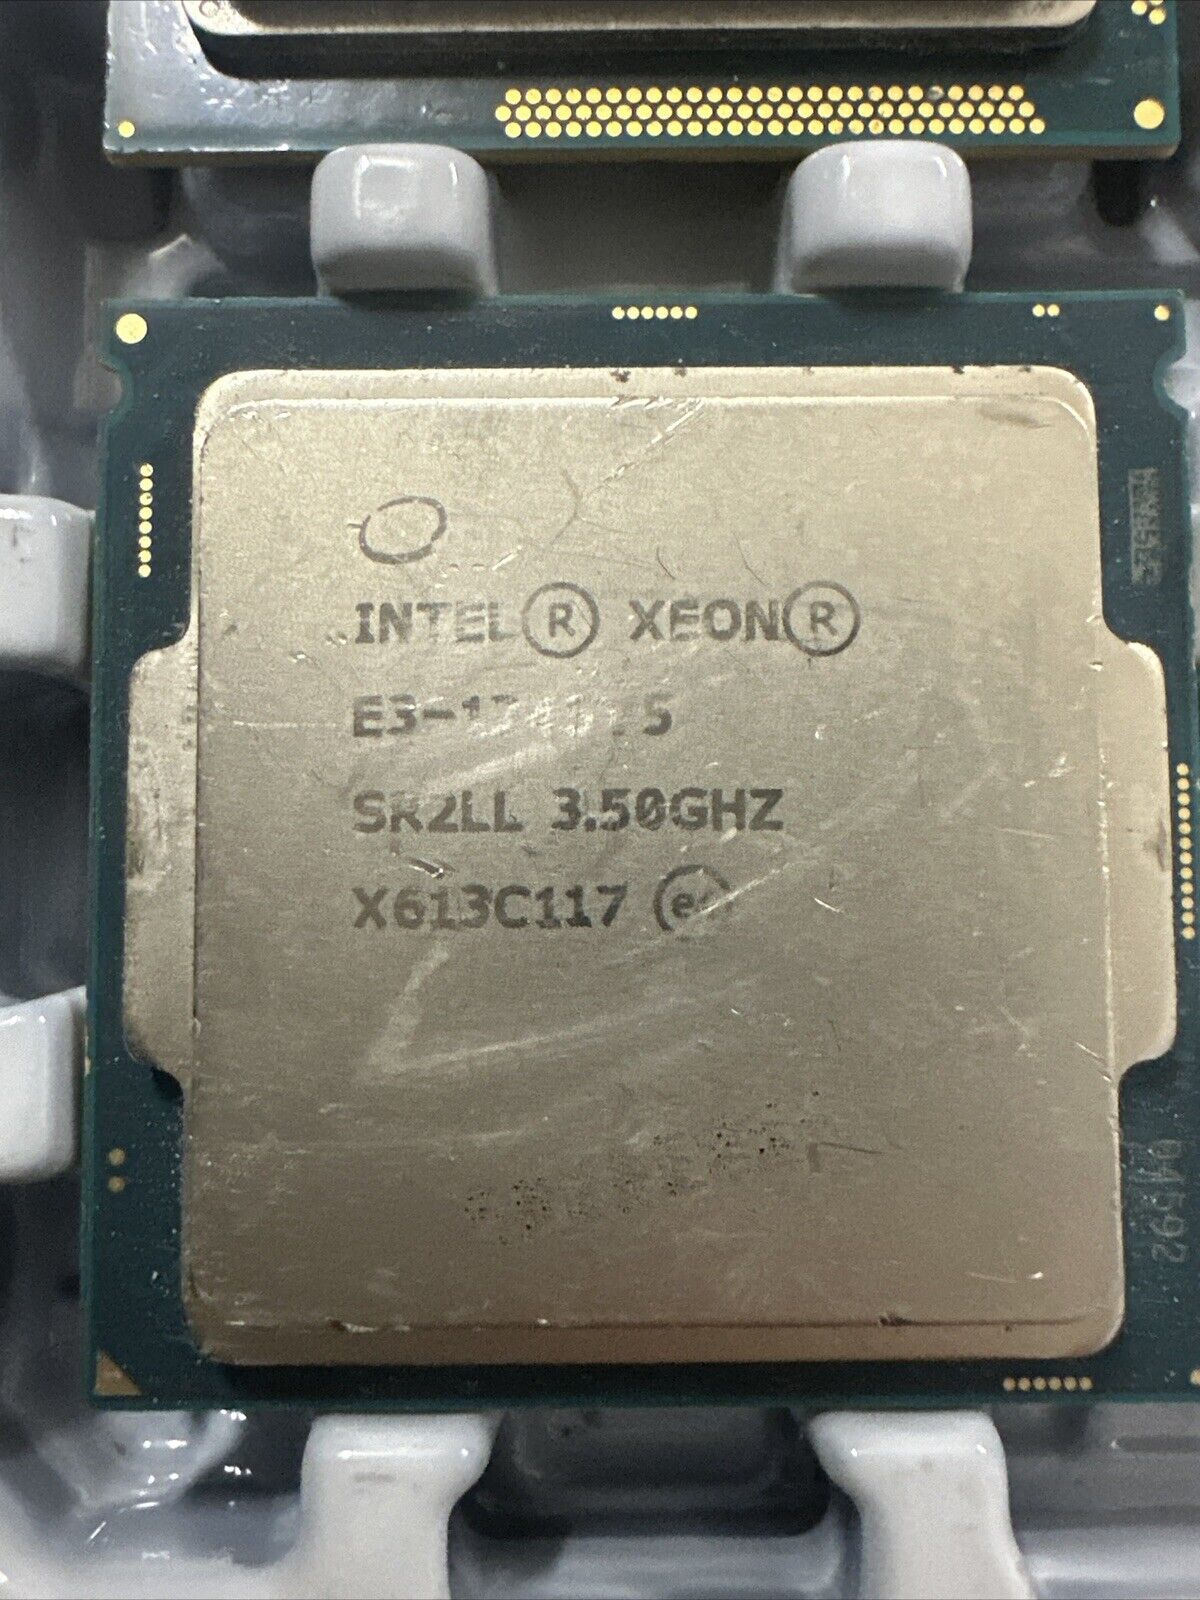 Intel Xeon E3-1245 v5 SR2LL 3.50GHz 8MB Quad Core LGA1151 CPU Processor